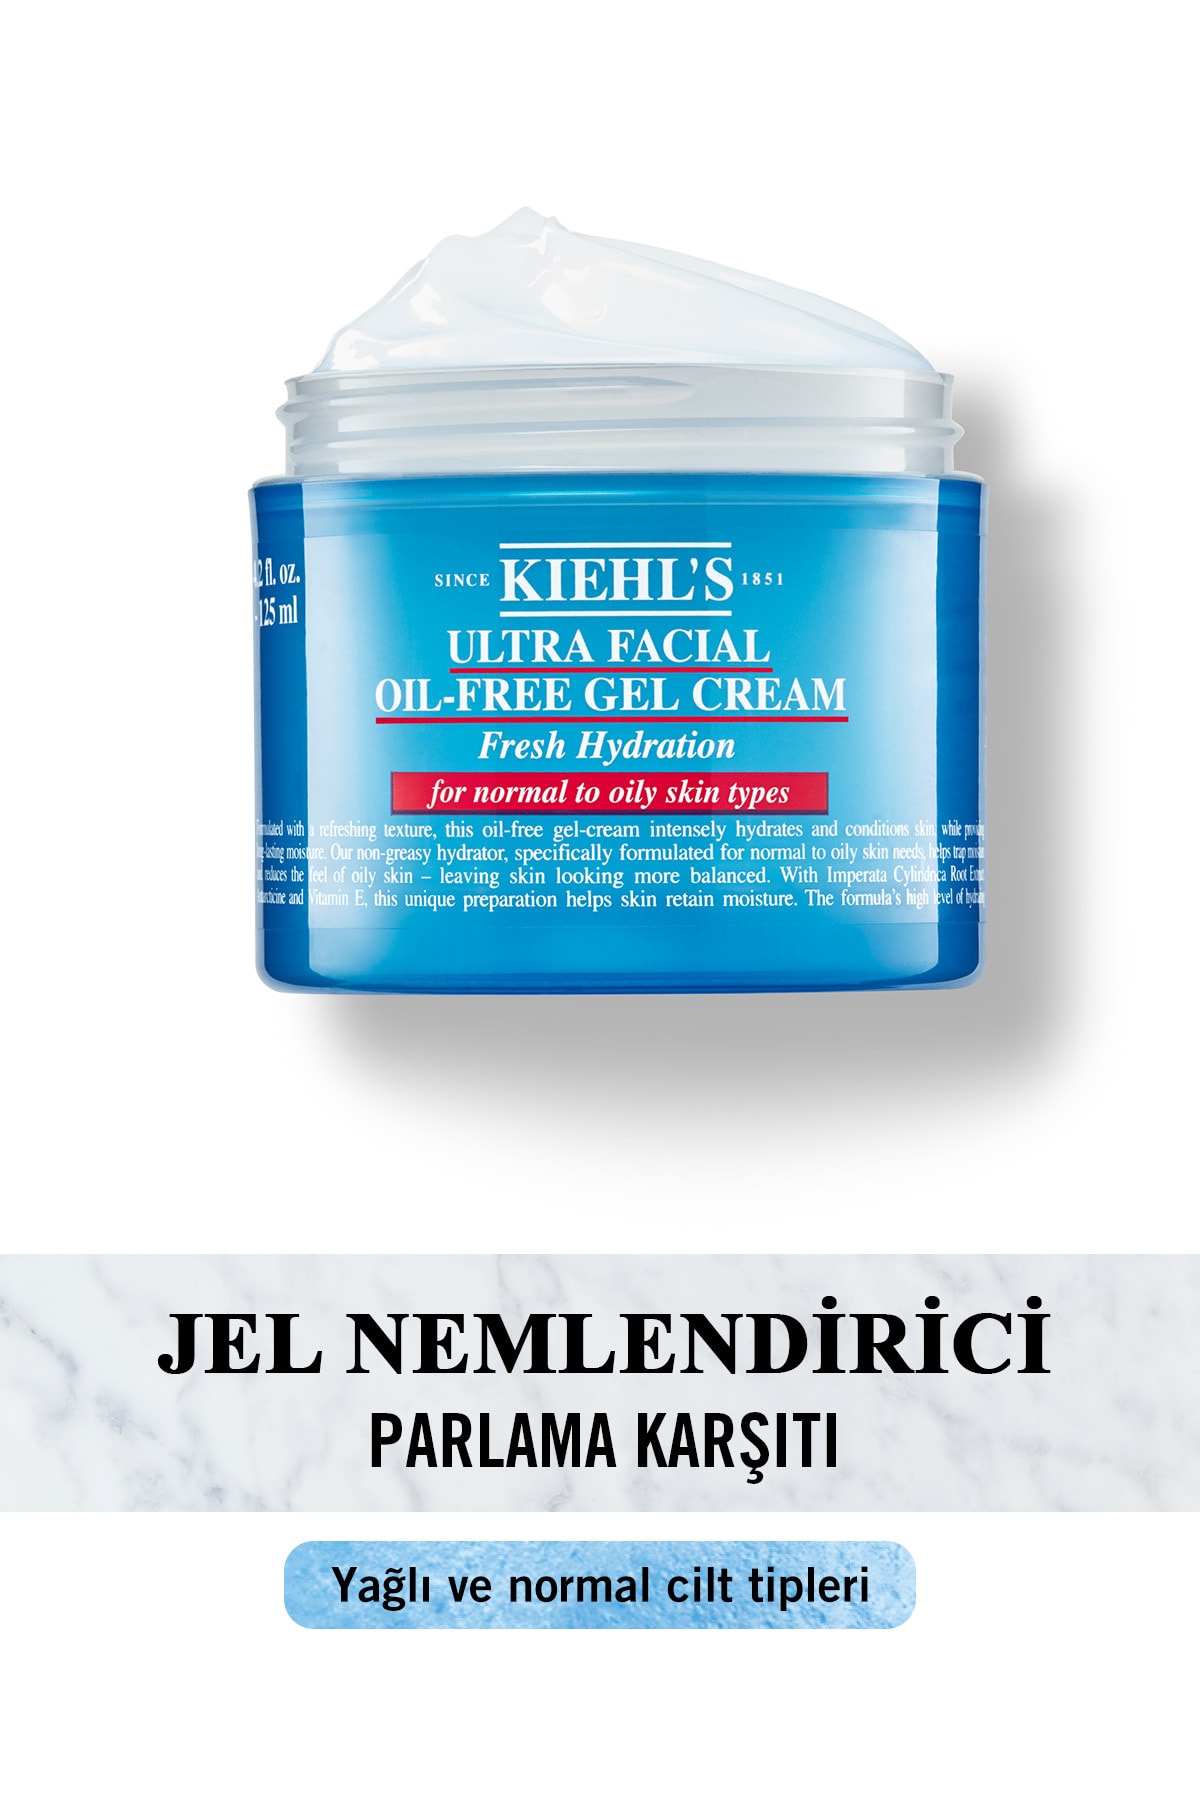 Kiehl's Ultra Facial Oil-free Yağlı Ciltler Için 24 Saat Nemlendiren Gözenek Karşıtı Jel Krem 125 ml